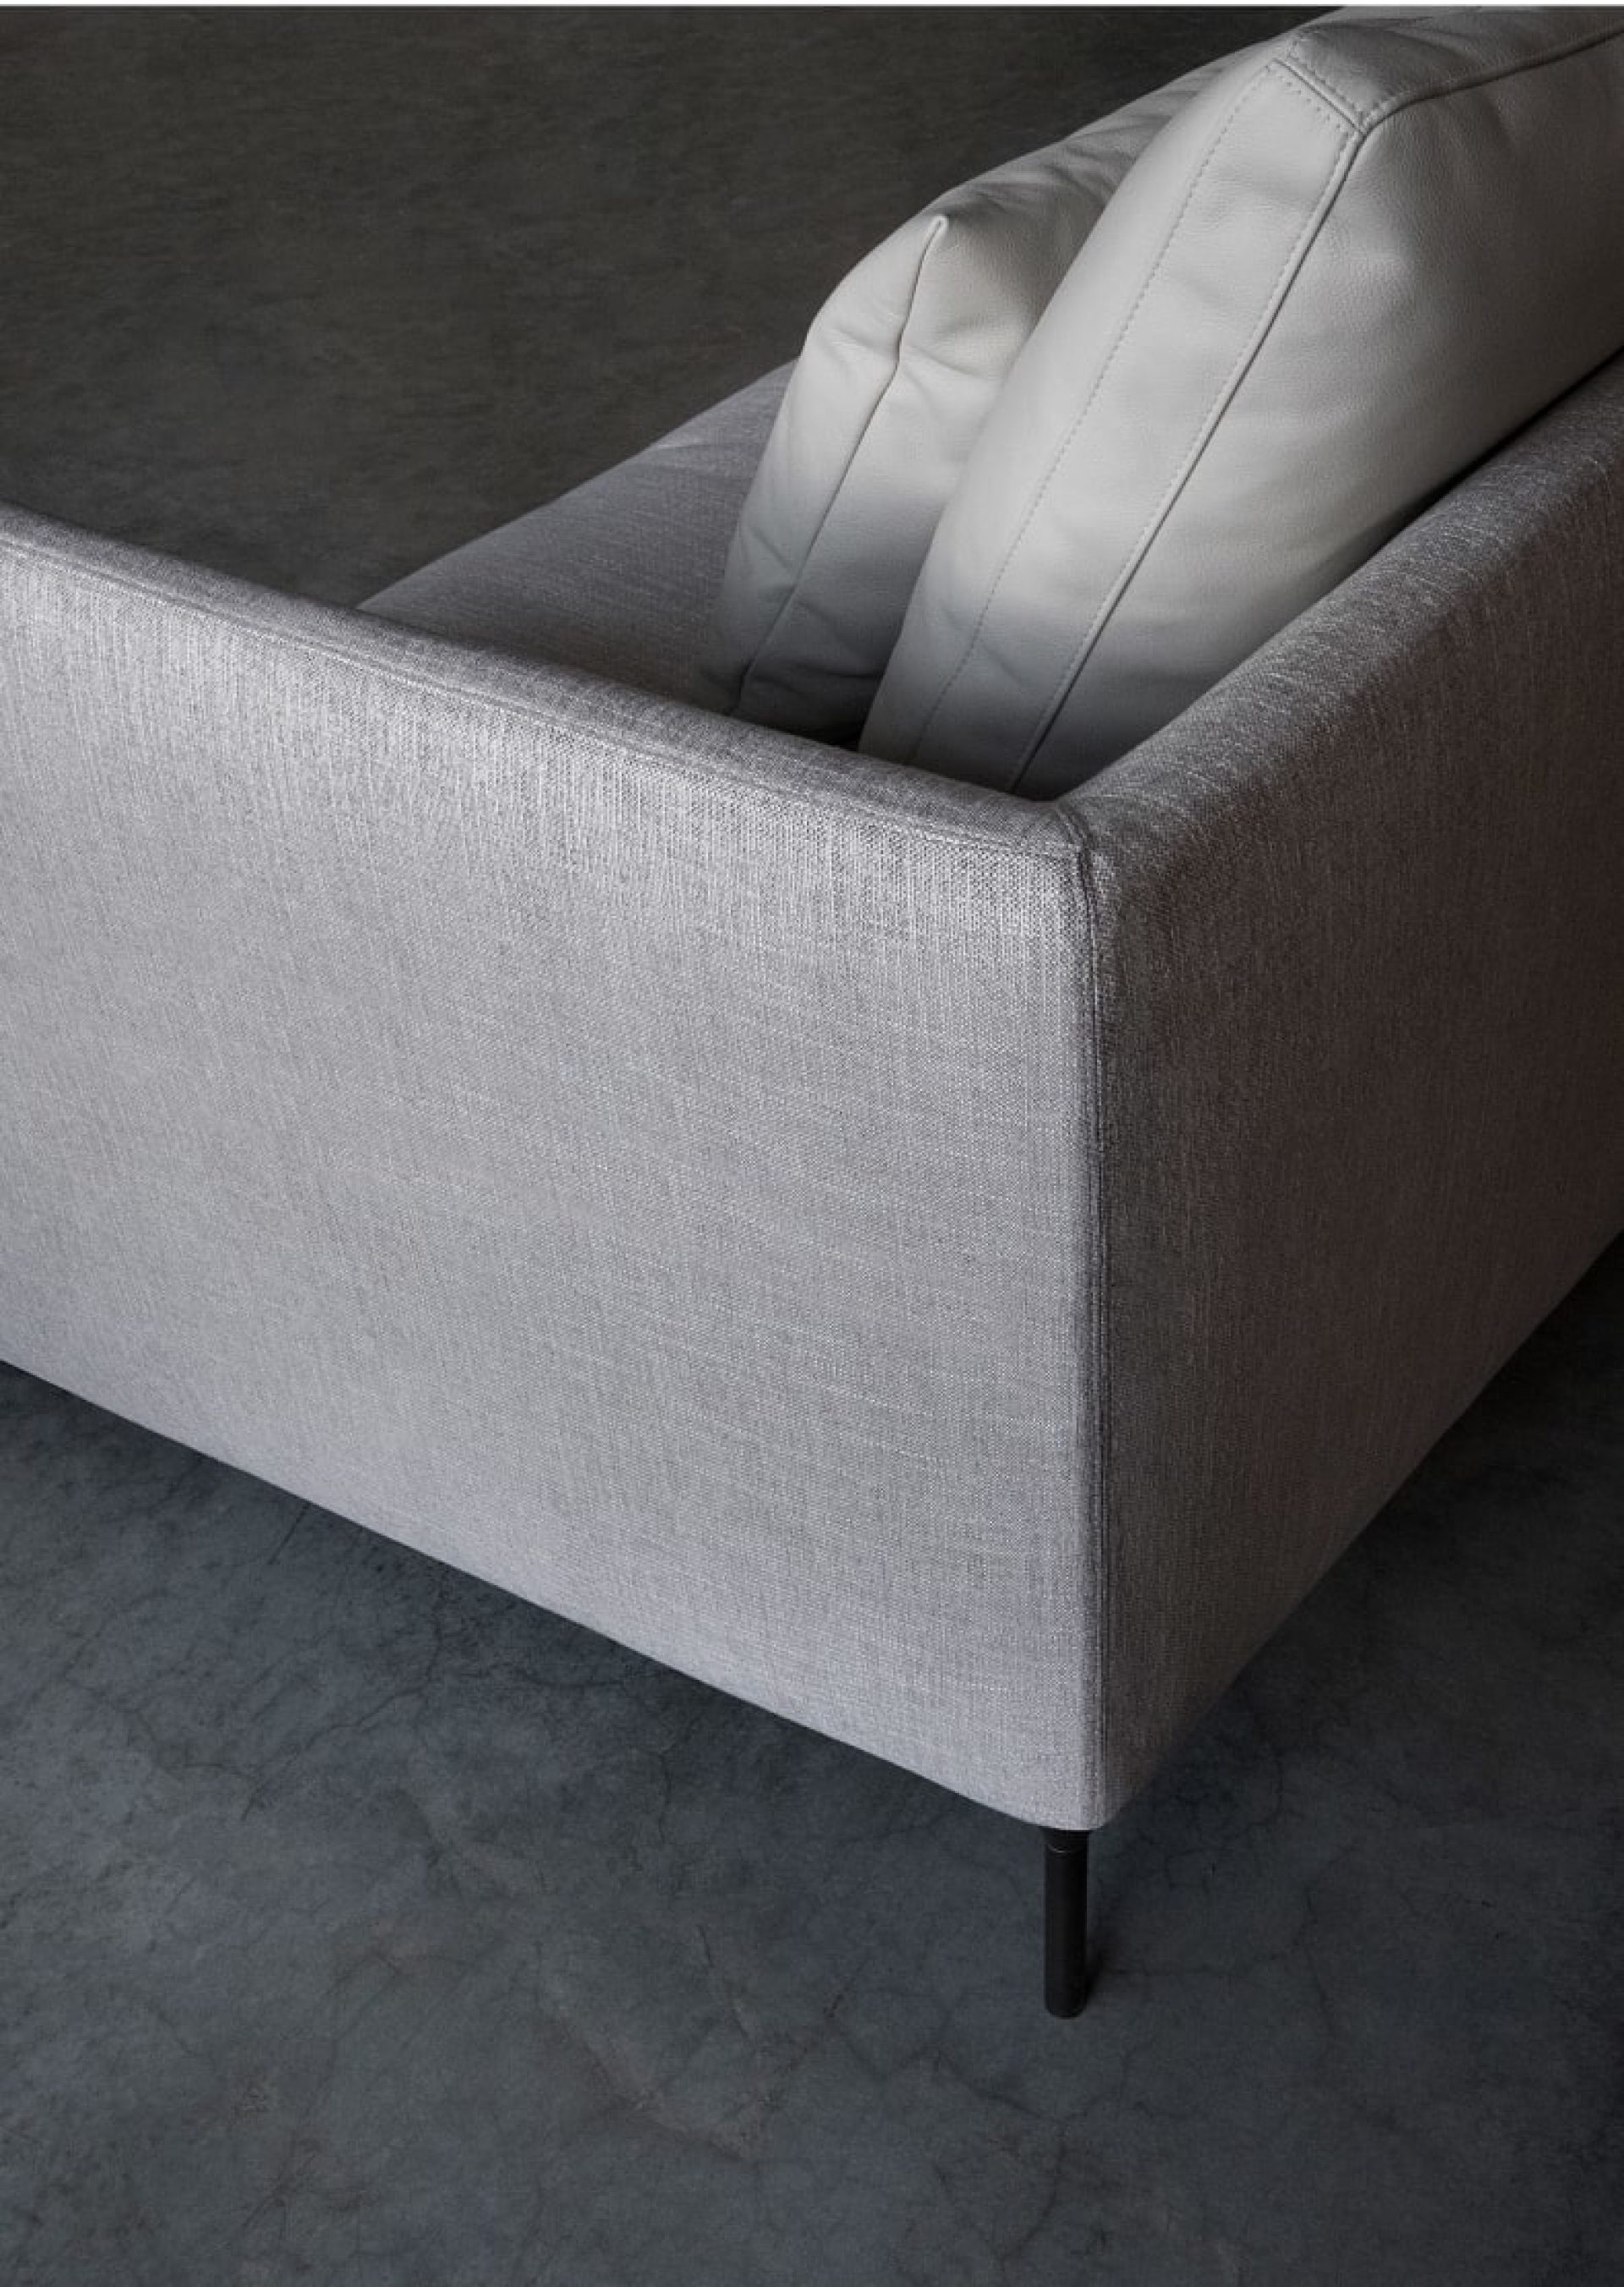 Sofá de tejido gris con respaldo rectangular y estructura ligera de acero negro, de la marca italiana Bensen